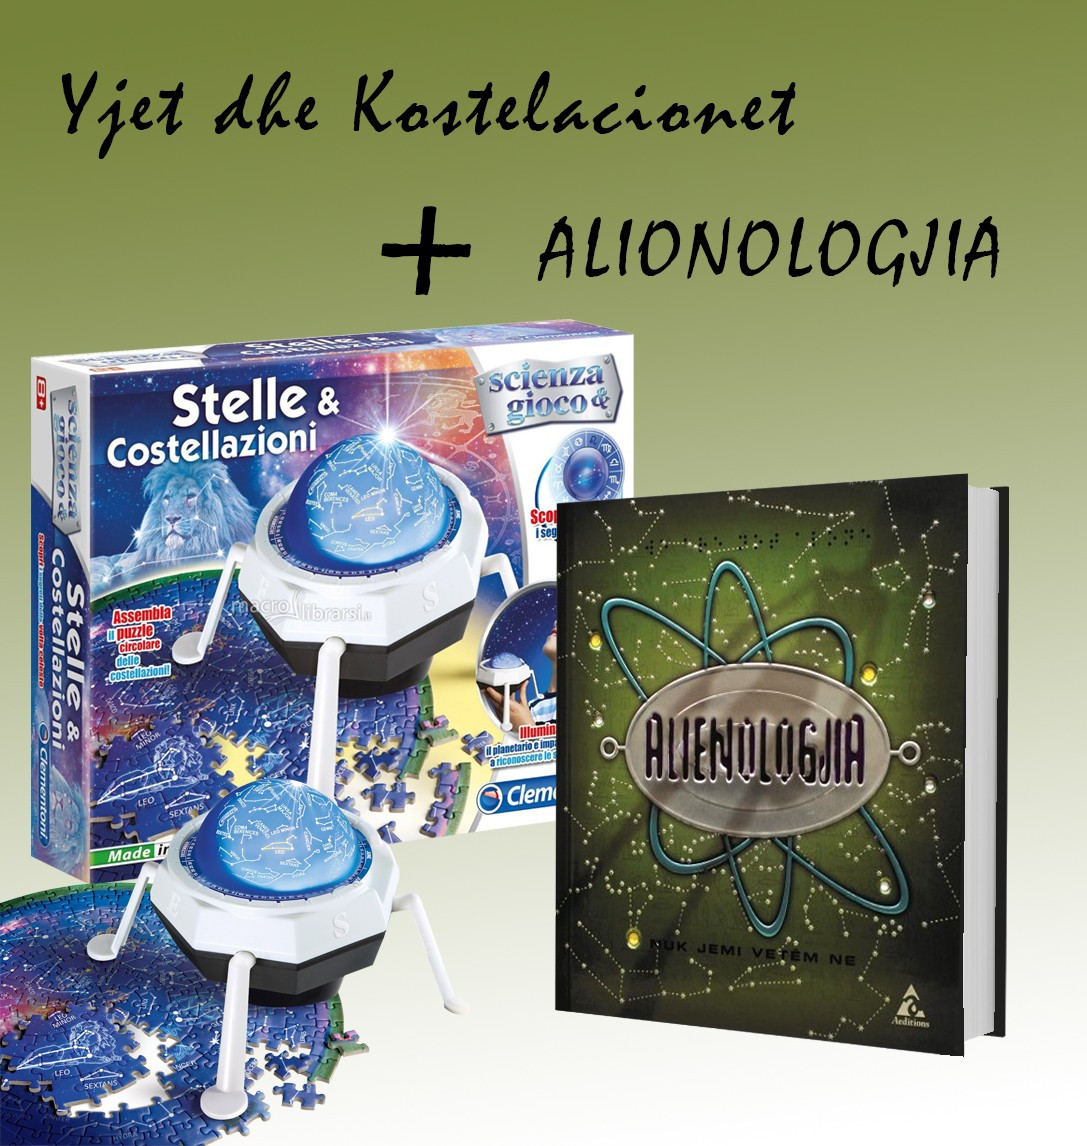 Set Yjet dhe kostelacionet + “Alienologjia”